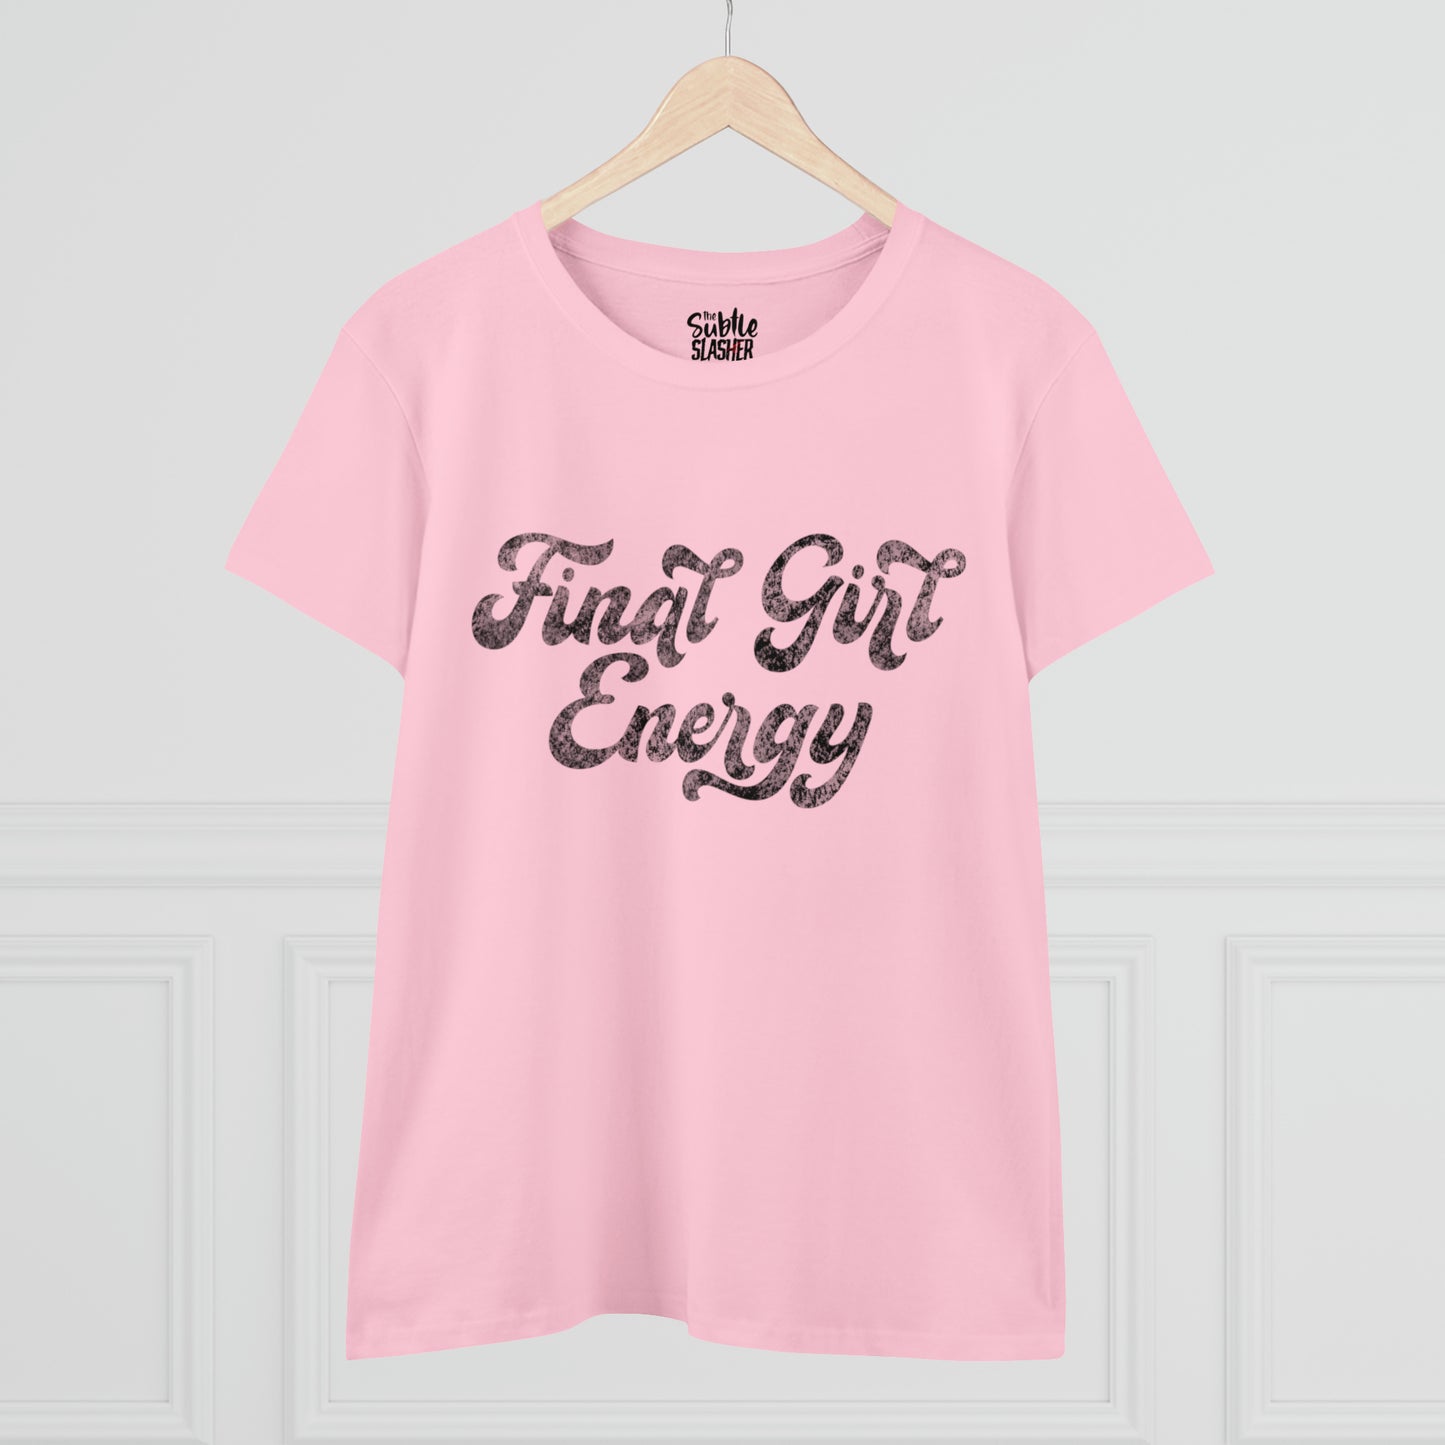 Final Girl Energy Women’s Tee